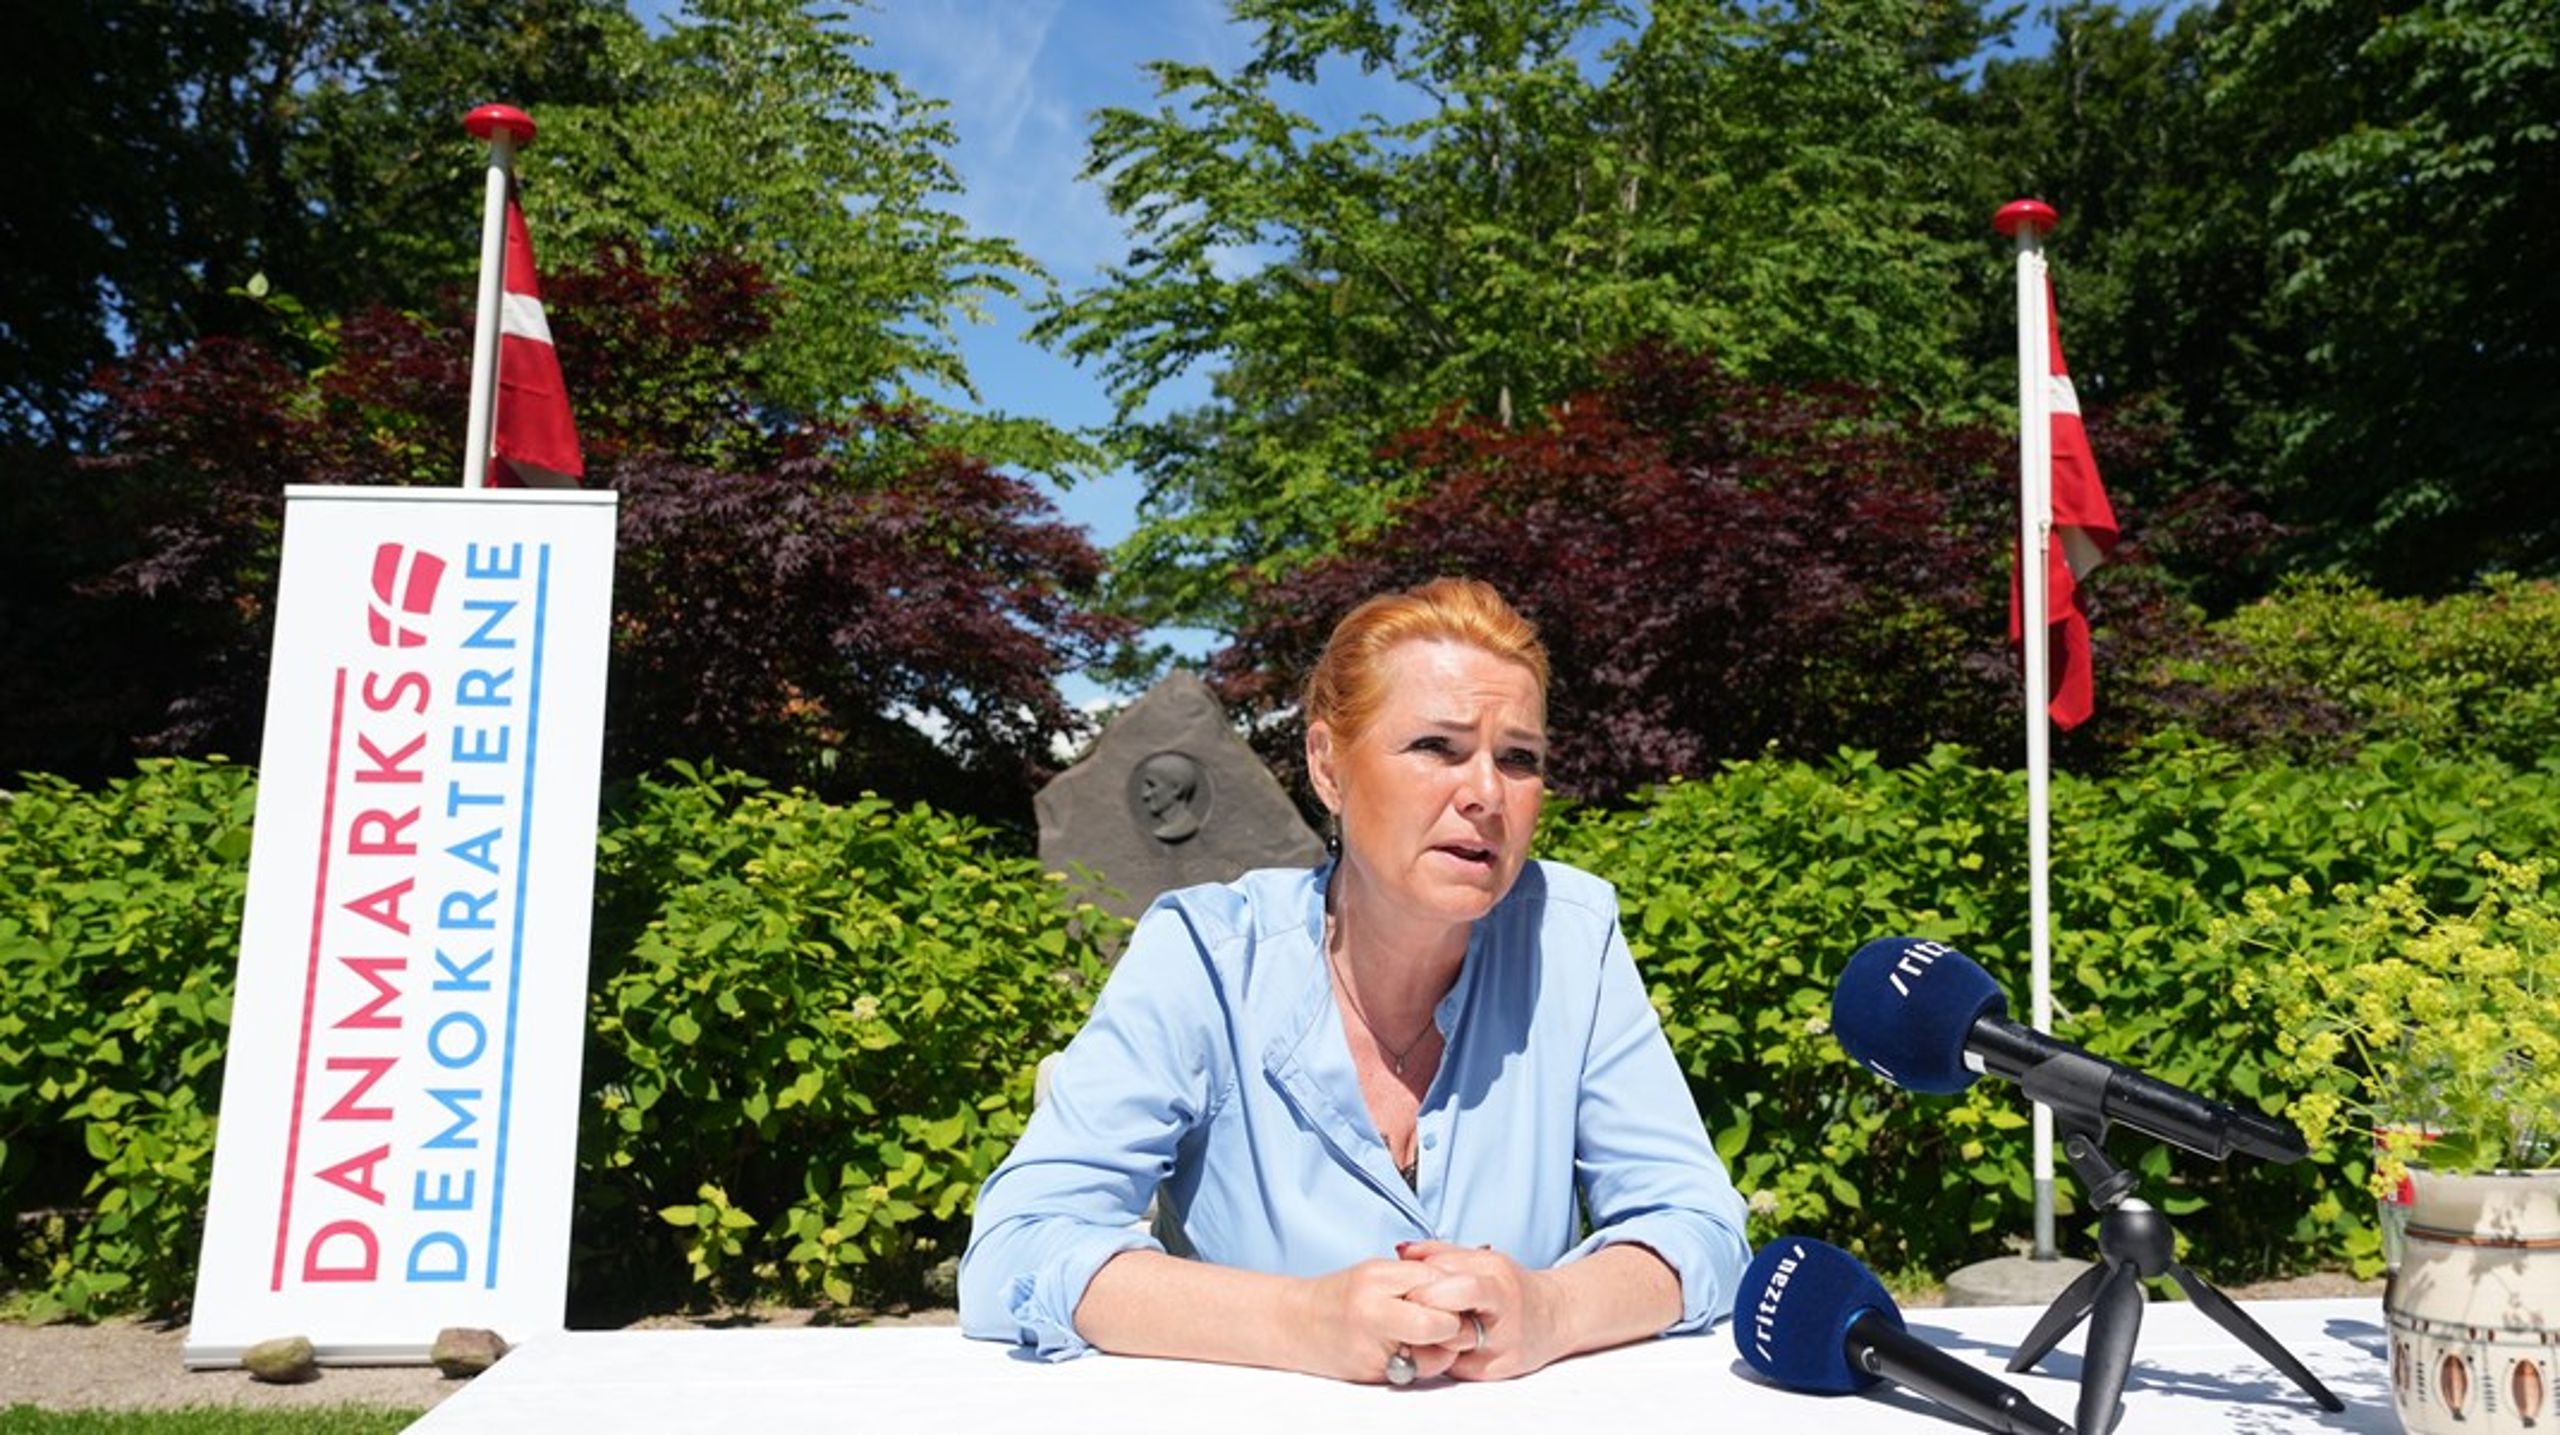 Da Peter Skaarup, tidligere medlem af Dansk Folkeparti, meldte sig ind i Danmarksdemokraterne, fik Inger Støjberg sit gamle kontor på Slotsholmen tilbage.